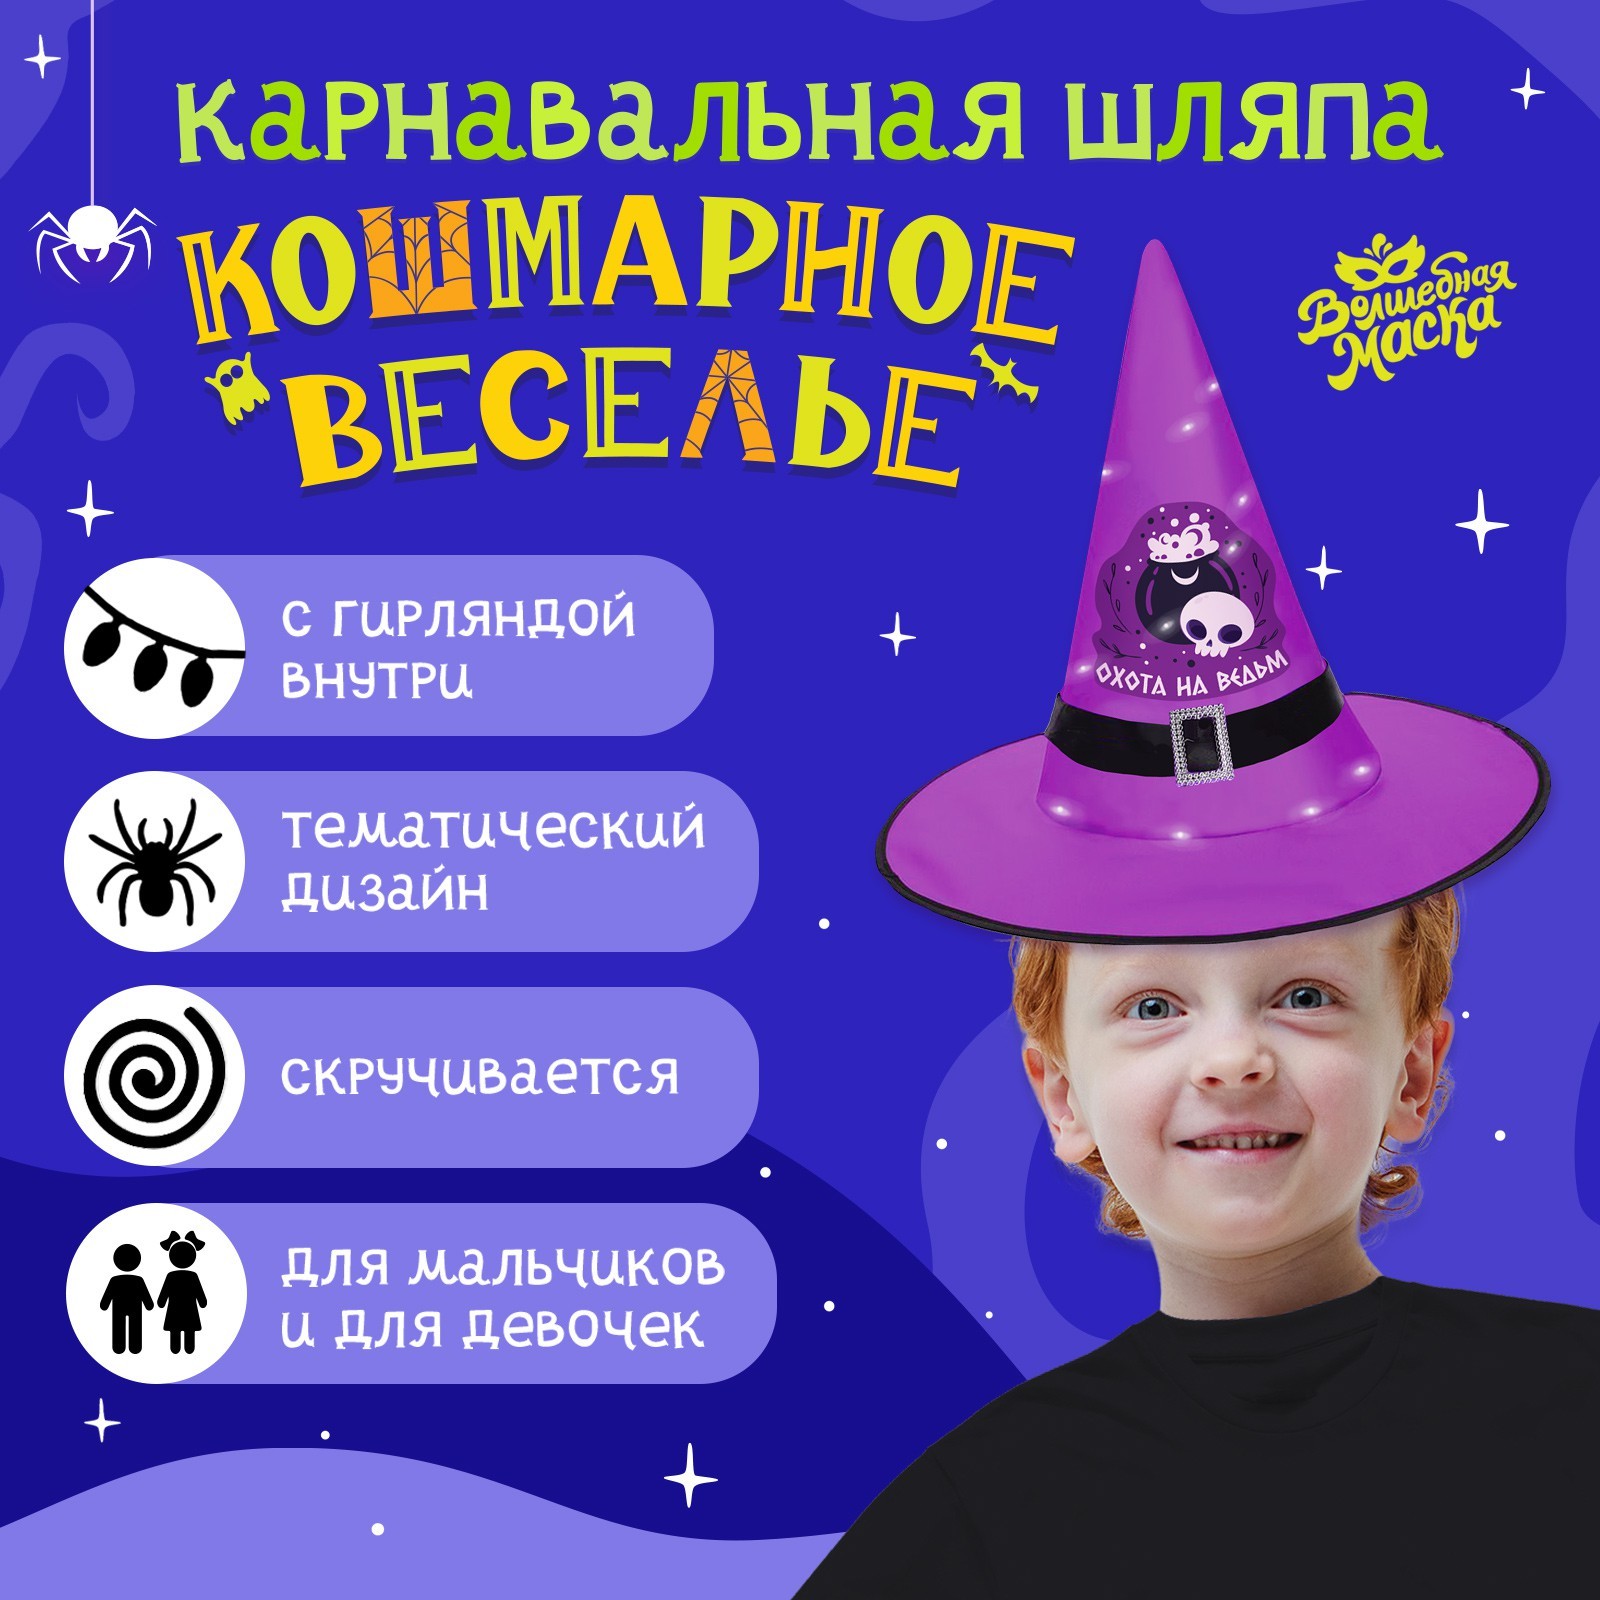 Карнавальная шляпа Волшебная маска Кошмарное веселье фиолетовая, с гирляндой